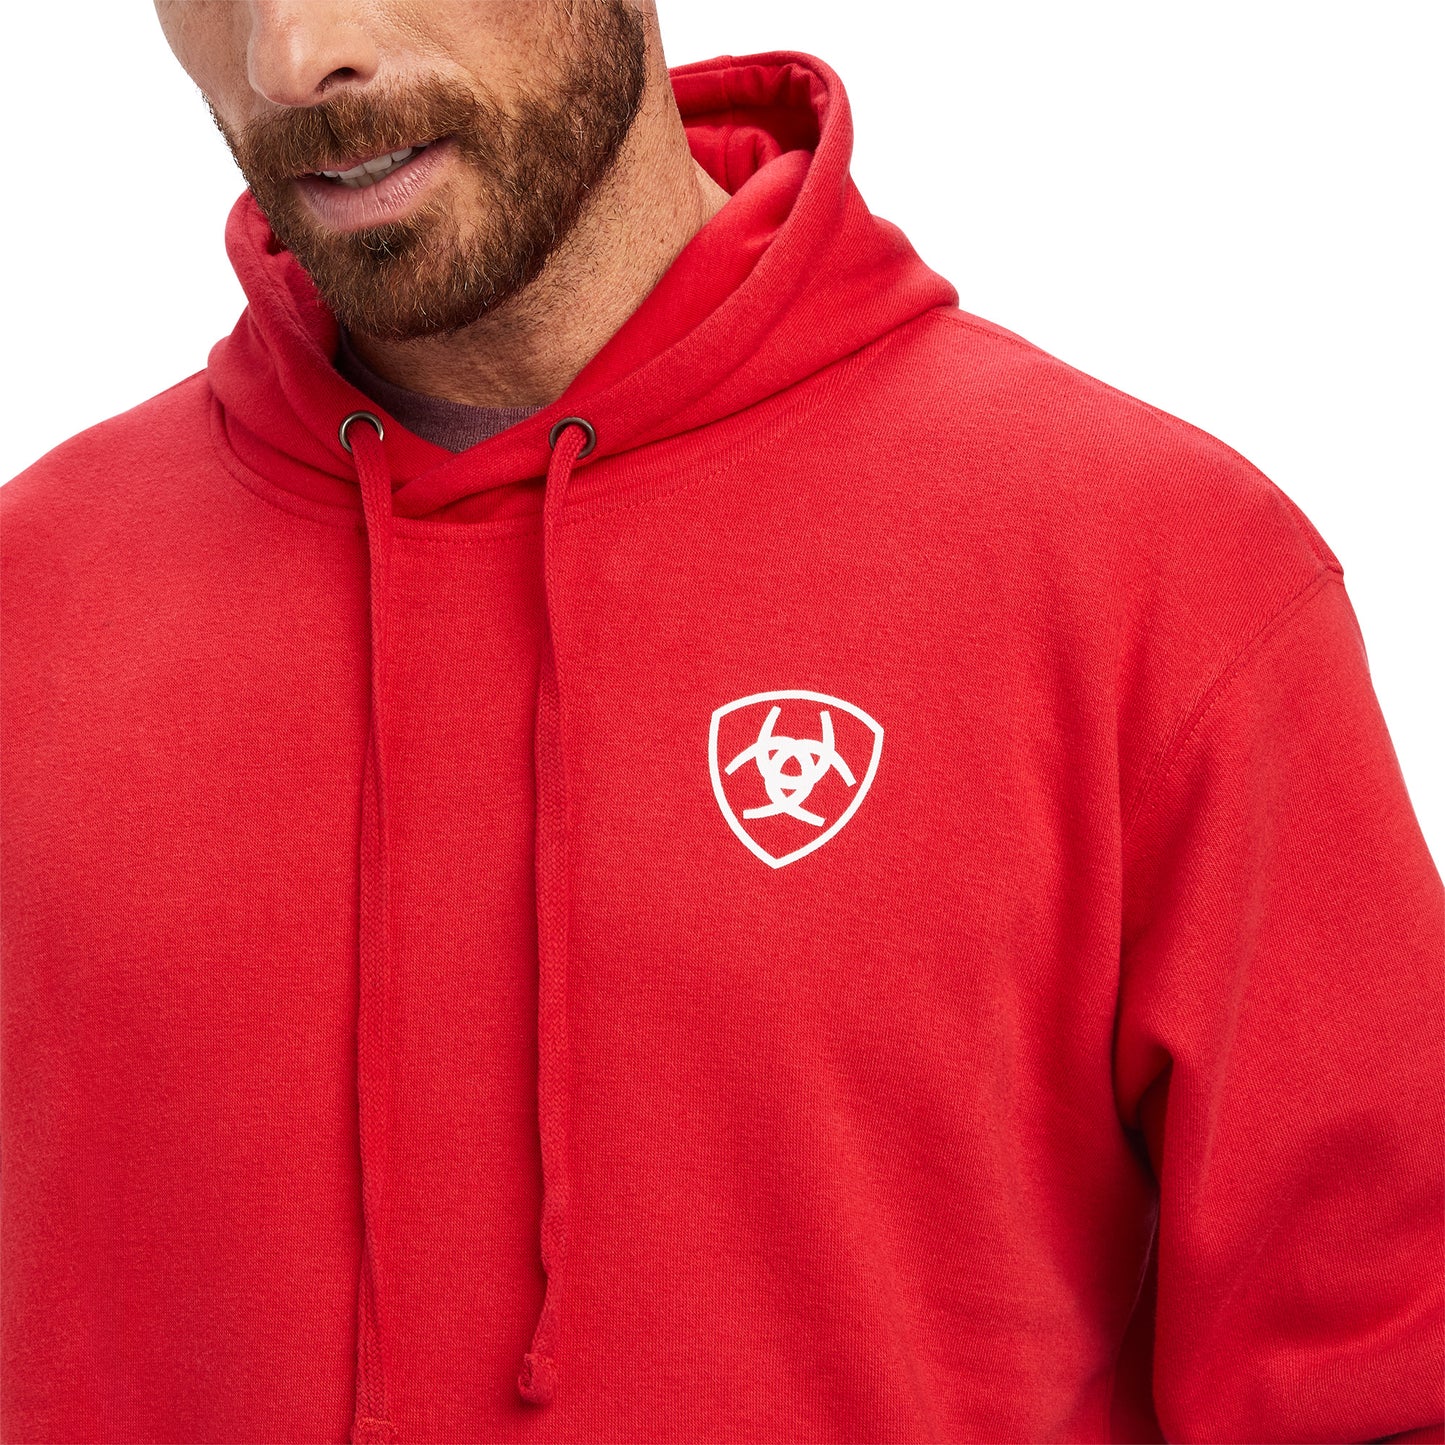 Ariat® Men's 93 Liberty Tango Red Hooded Sweatshirt 10041719